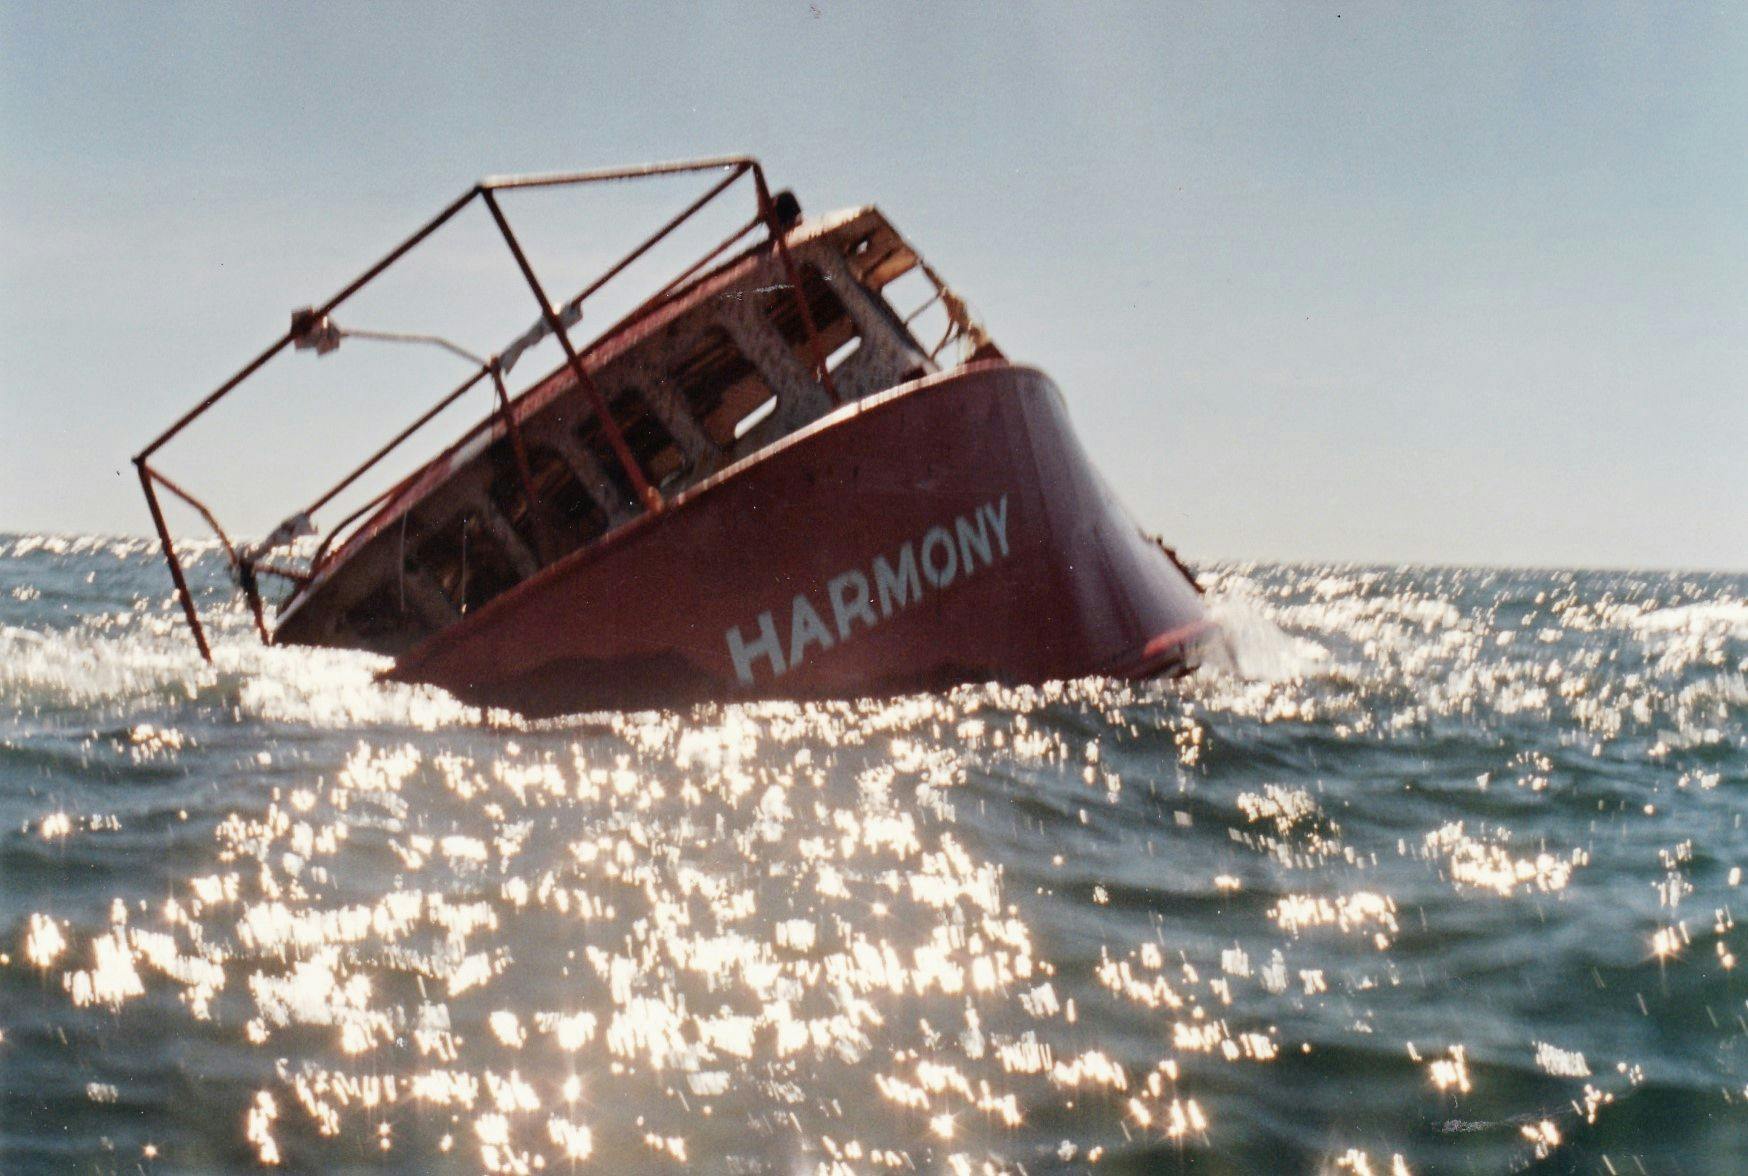 Harmony sinking